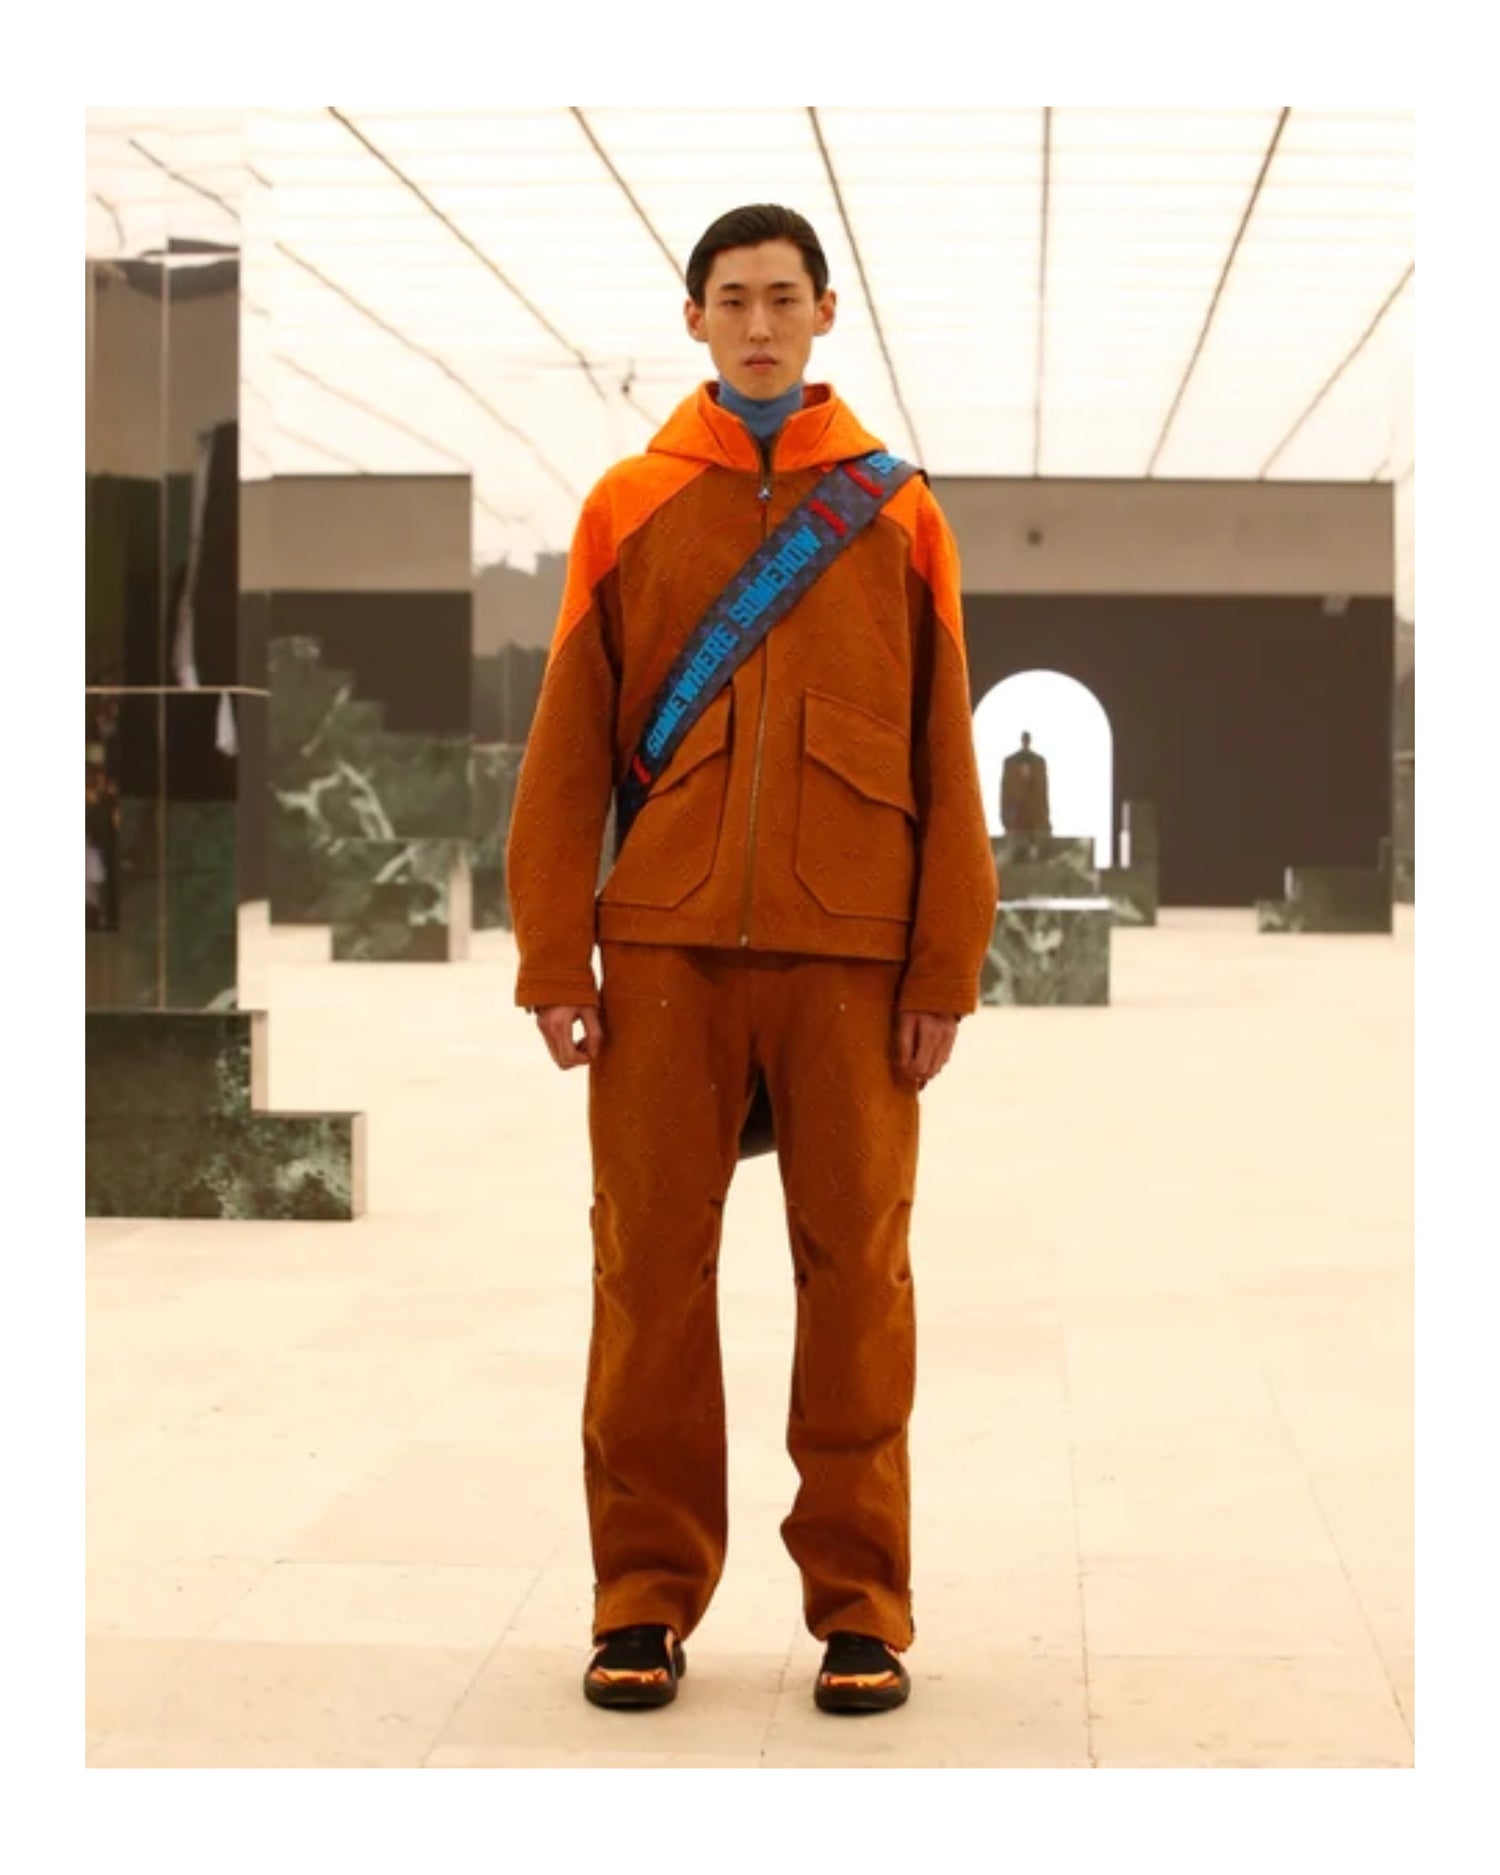 Louis Vuitton - Monogram Workwear Denim Carpenter Pants